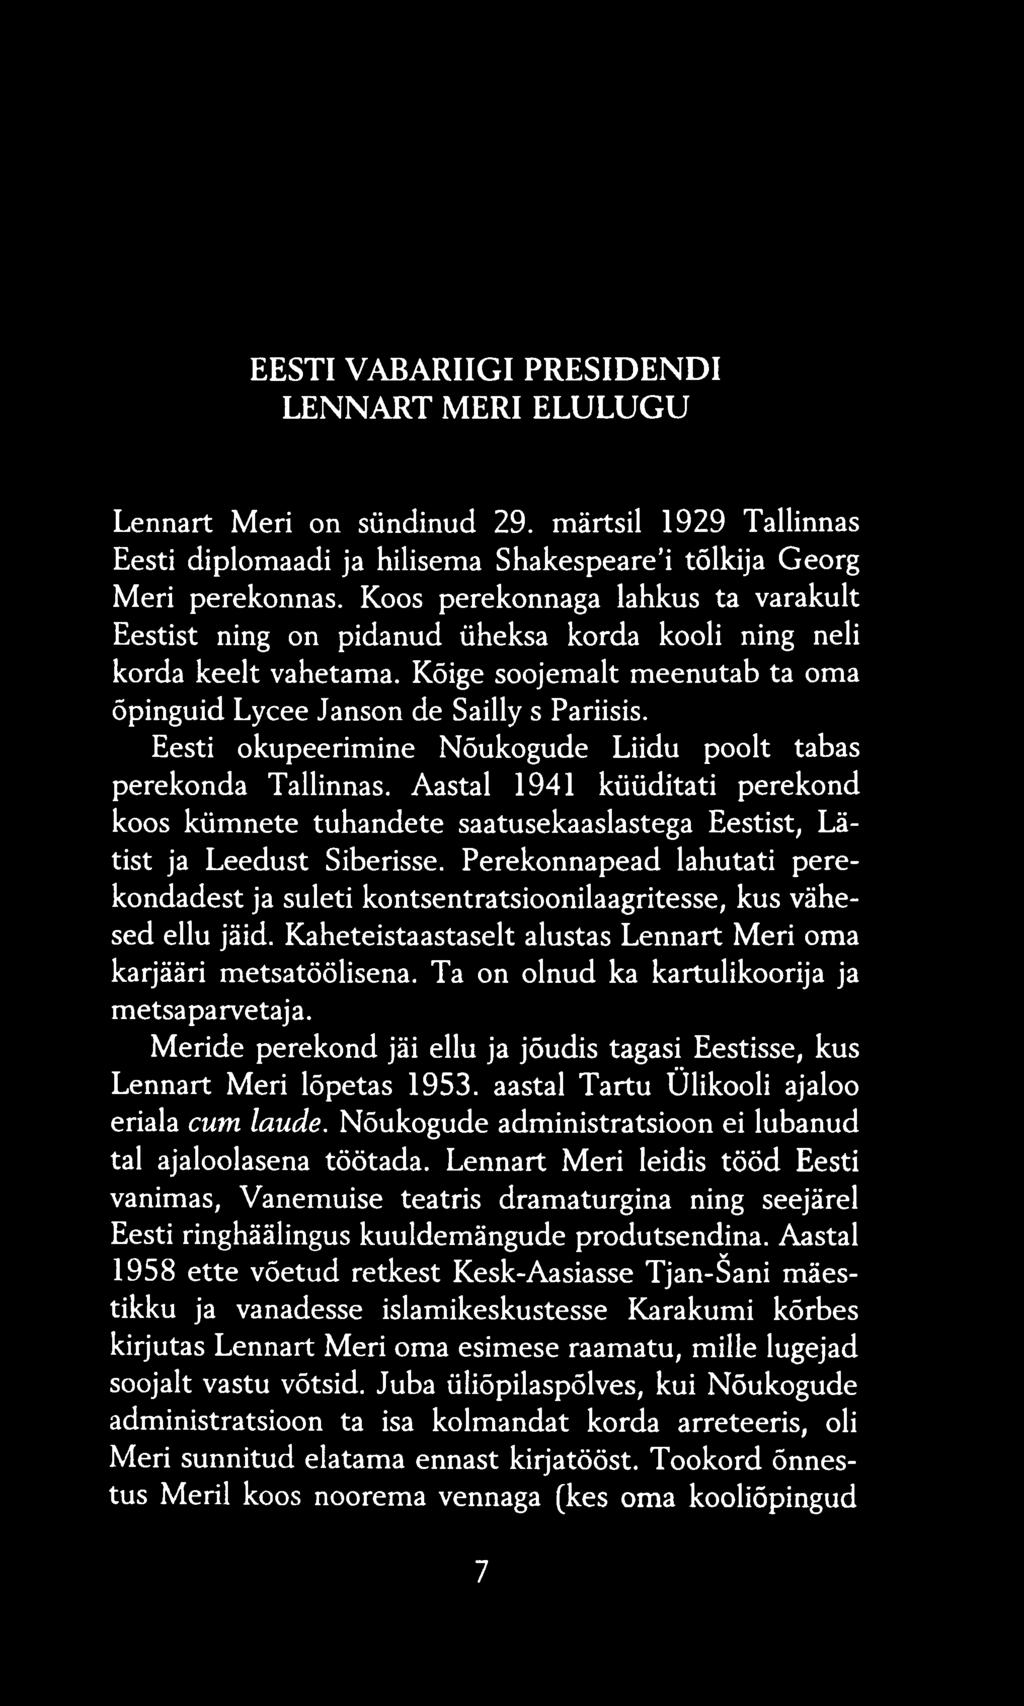 Eesti okupeerimine Nõukogude Liidu poolt tabas perekonda Tallinnas. Aastal 1941 küüditati perekond koos kümnete tuhandete saatusekaaslastega Eestist, Lätist ja Leedust Siberisse.